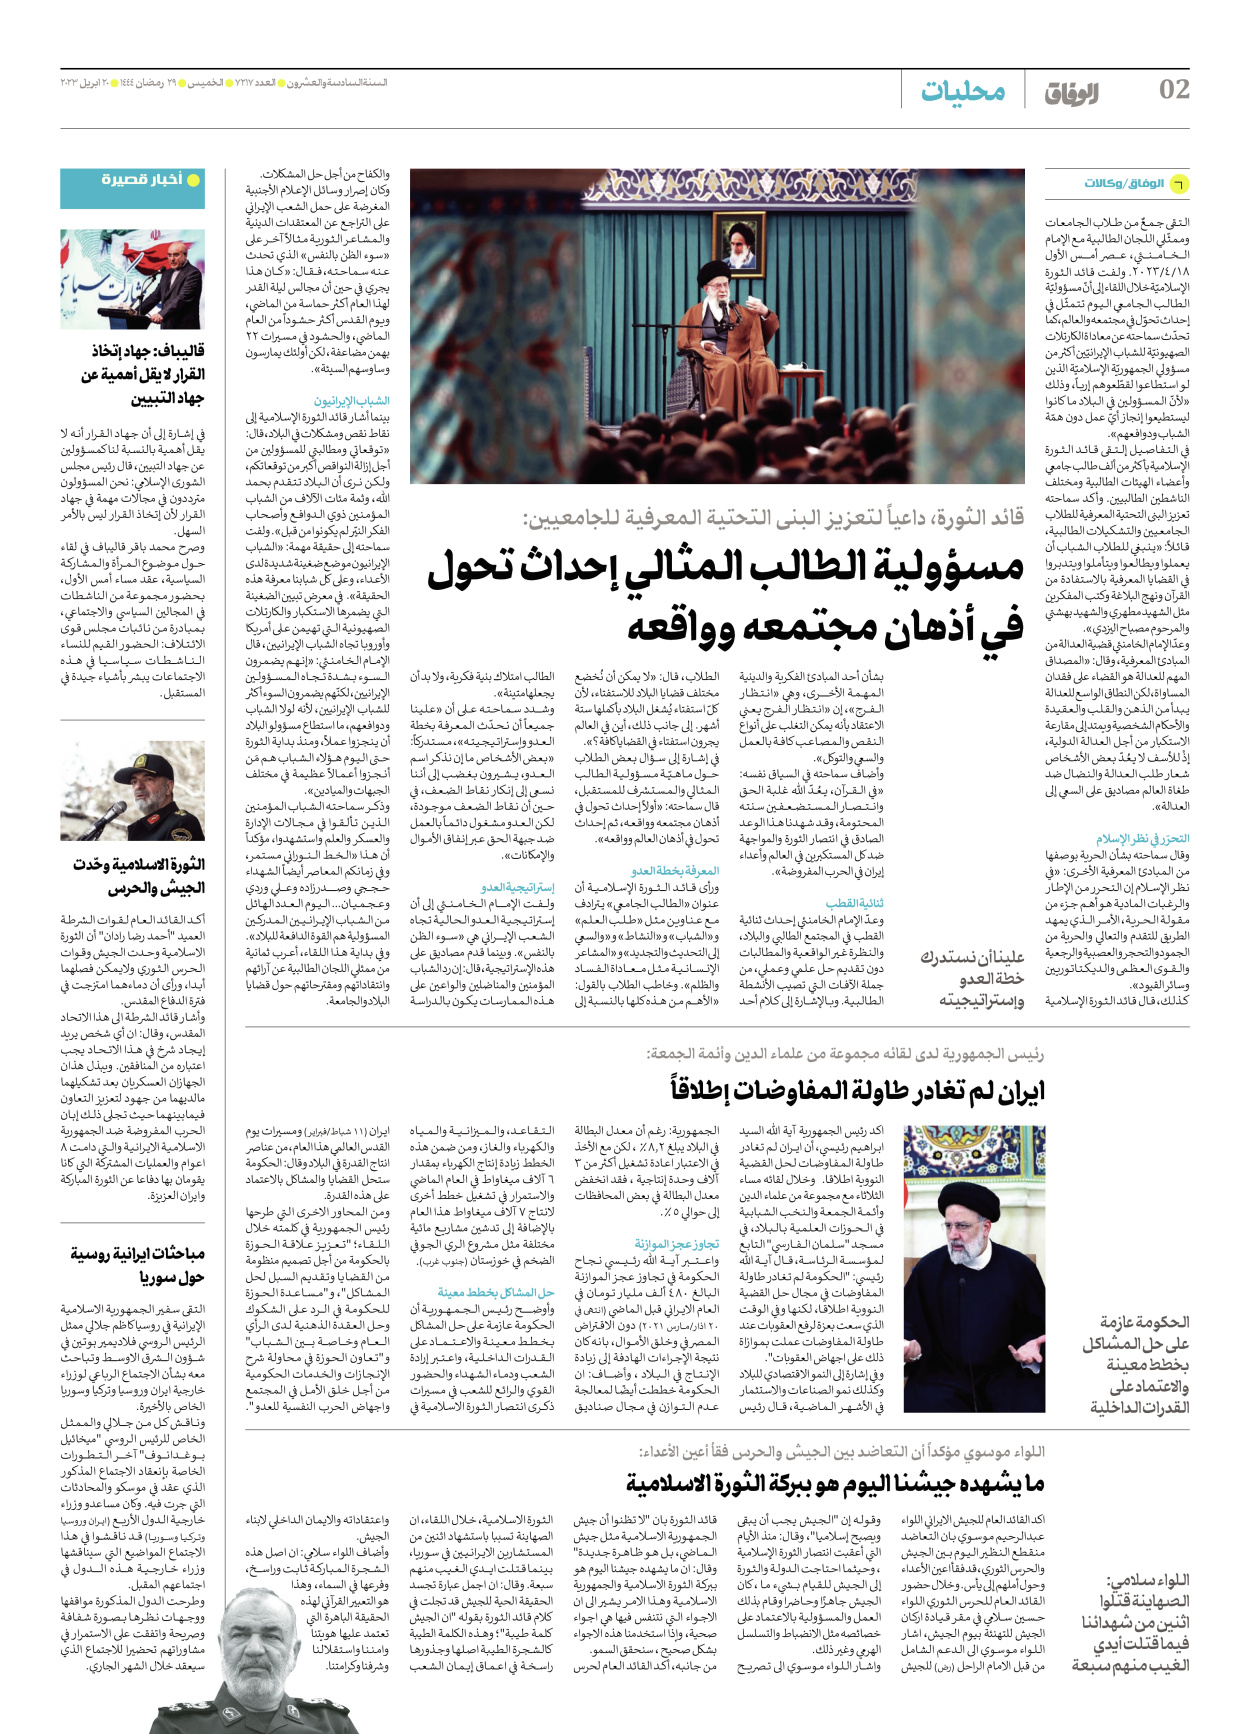 صحیفة ایران الدولیة الوفاق - العدد سبعة آلاف ومائتان وسبعة عشر - ٢٠ أبريل ٢٠٢٣ - الصفحة ۲